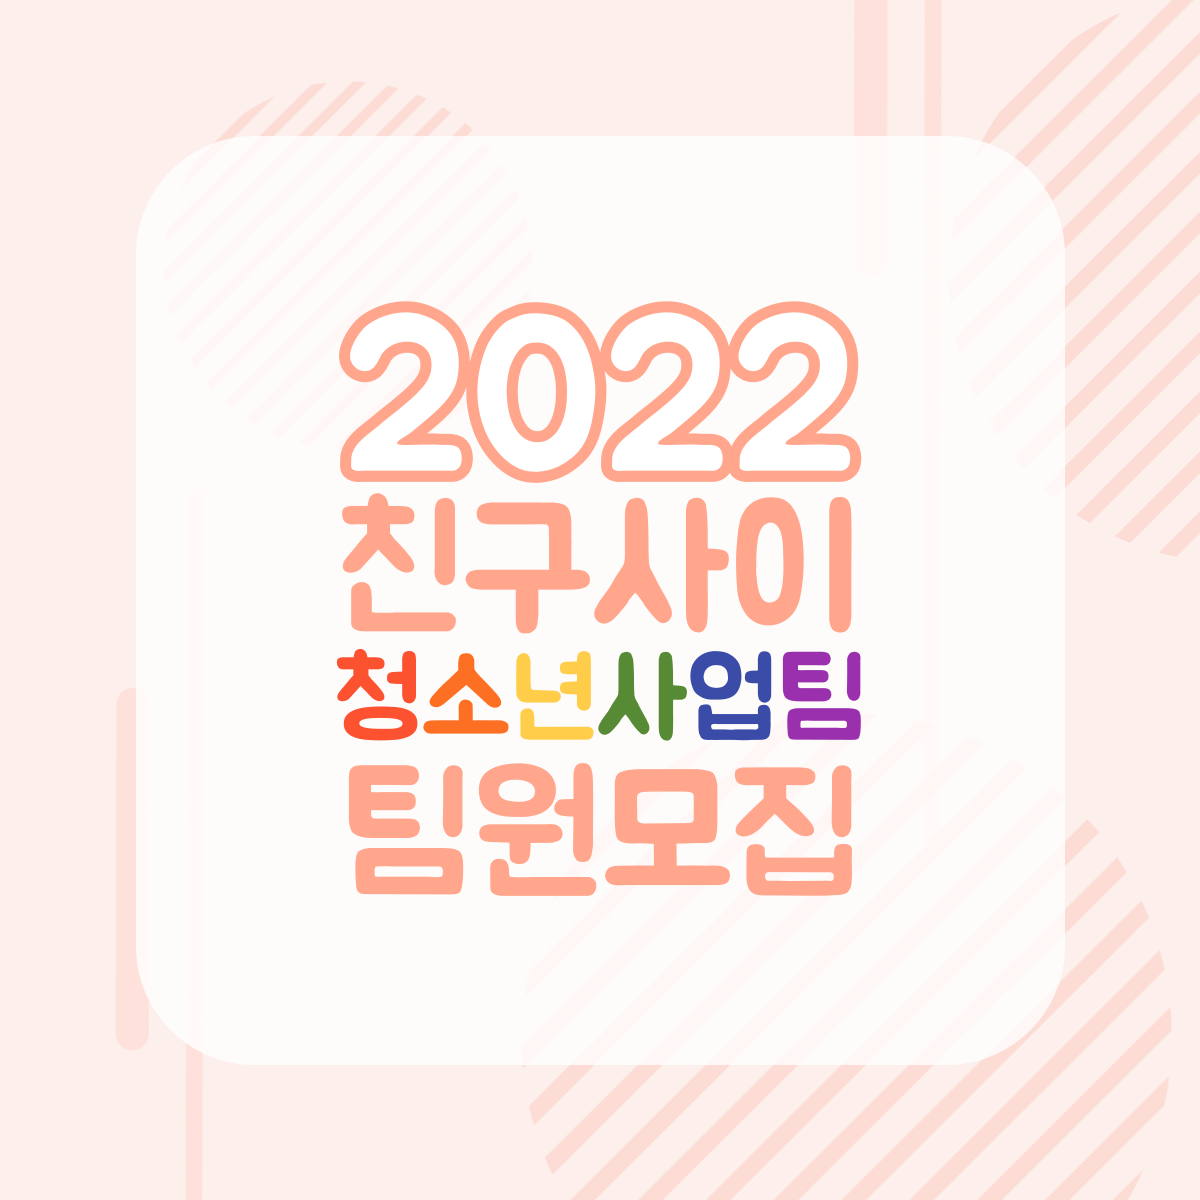 2022-청소년사업팀-팀원모집-001.png